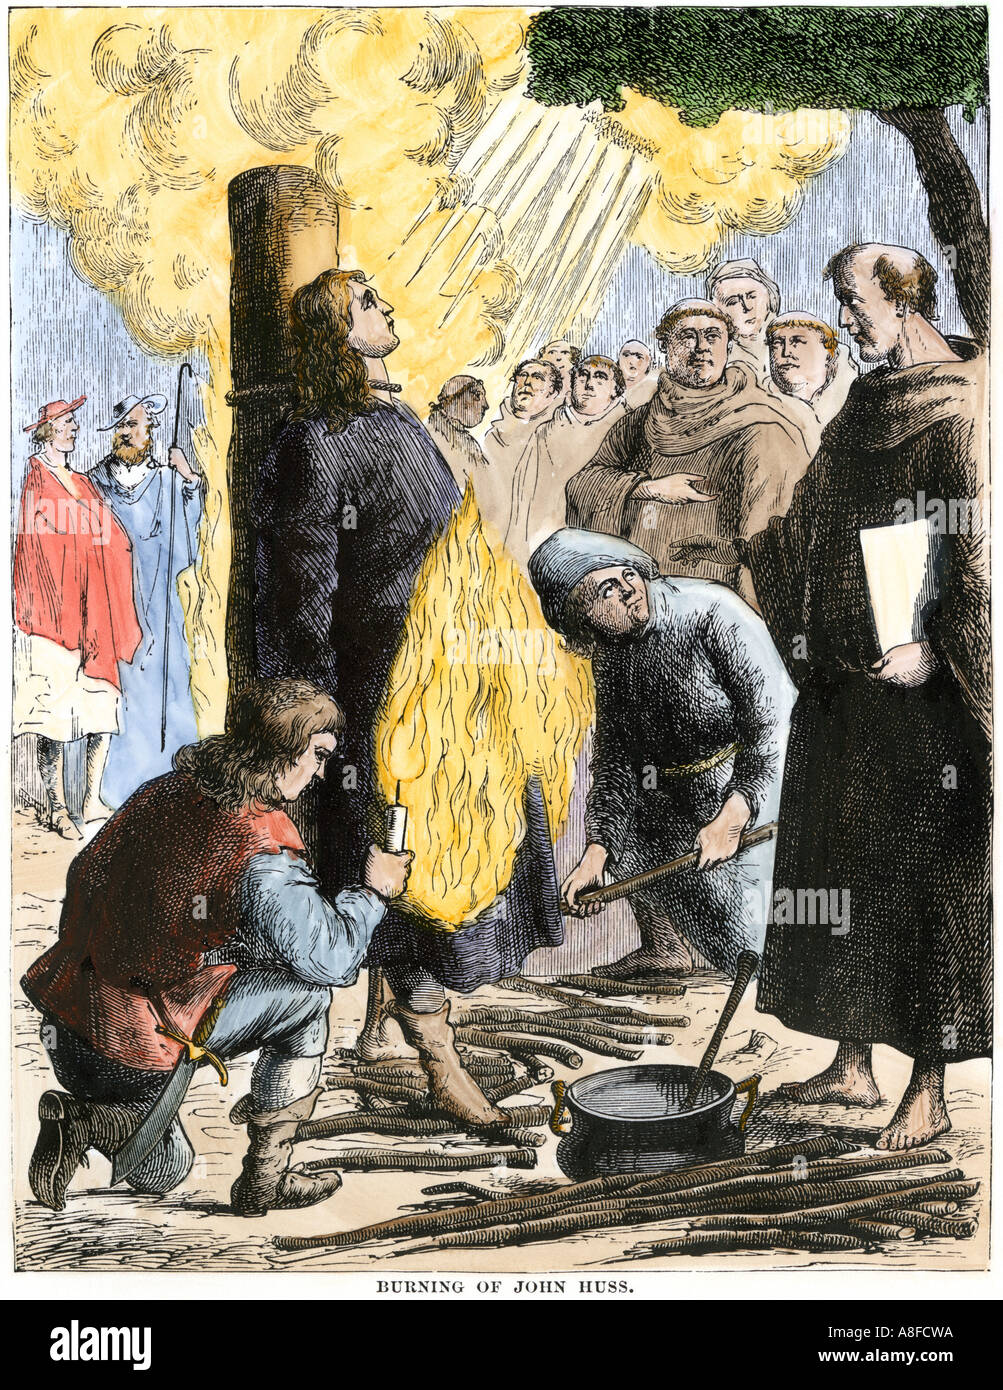 Religiöse Reformator Jan Hus auf dem Scheiterhaufen verbrannt, die von der römisch-katholischen Kirche 1415. Hand - farbige Holzschnitt Stockfoto